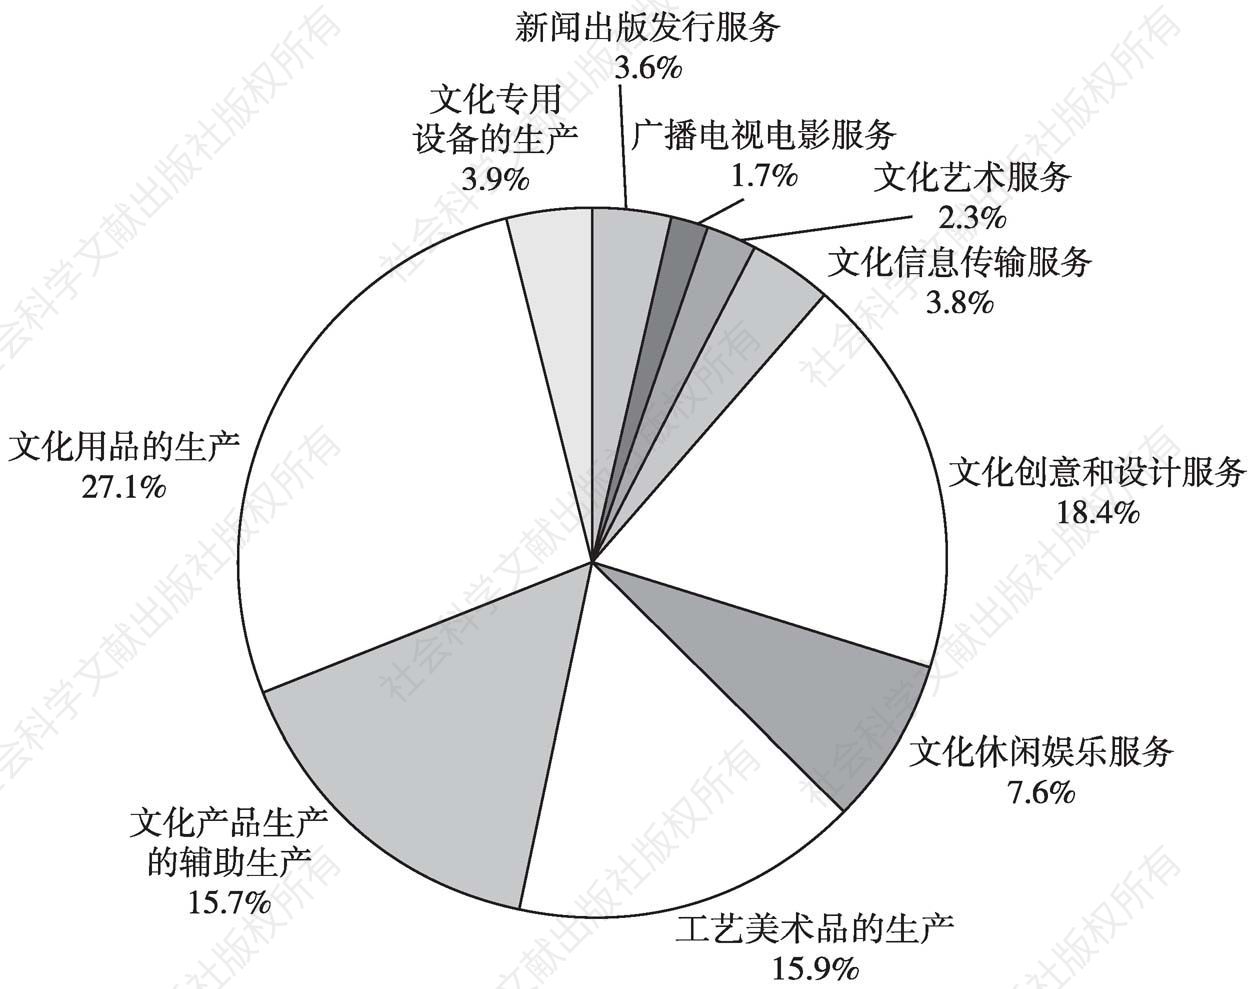 图5 2013年全国文化产业年末从业人员数的大类构成